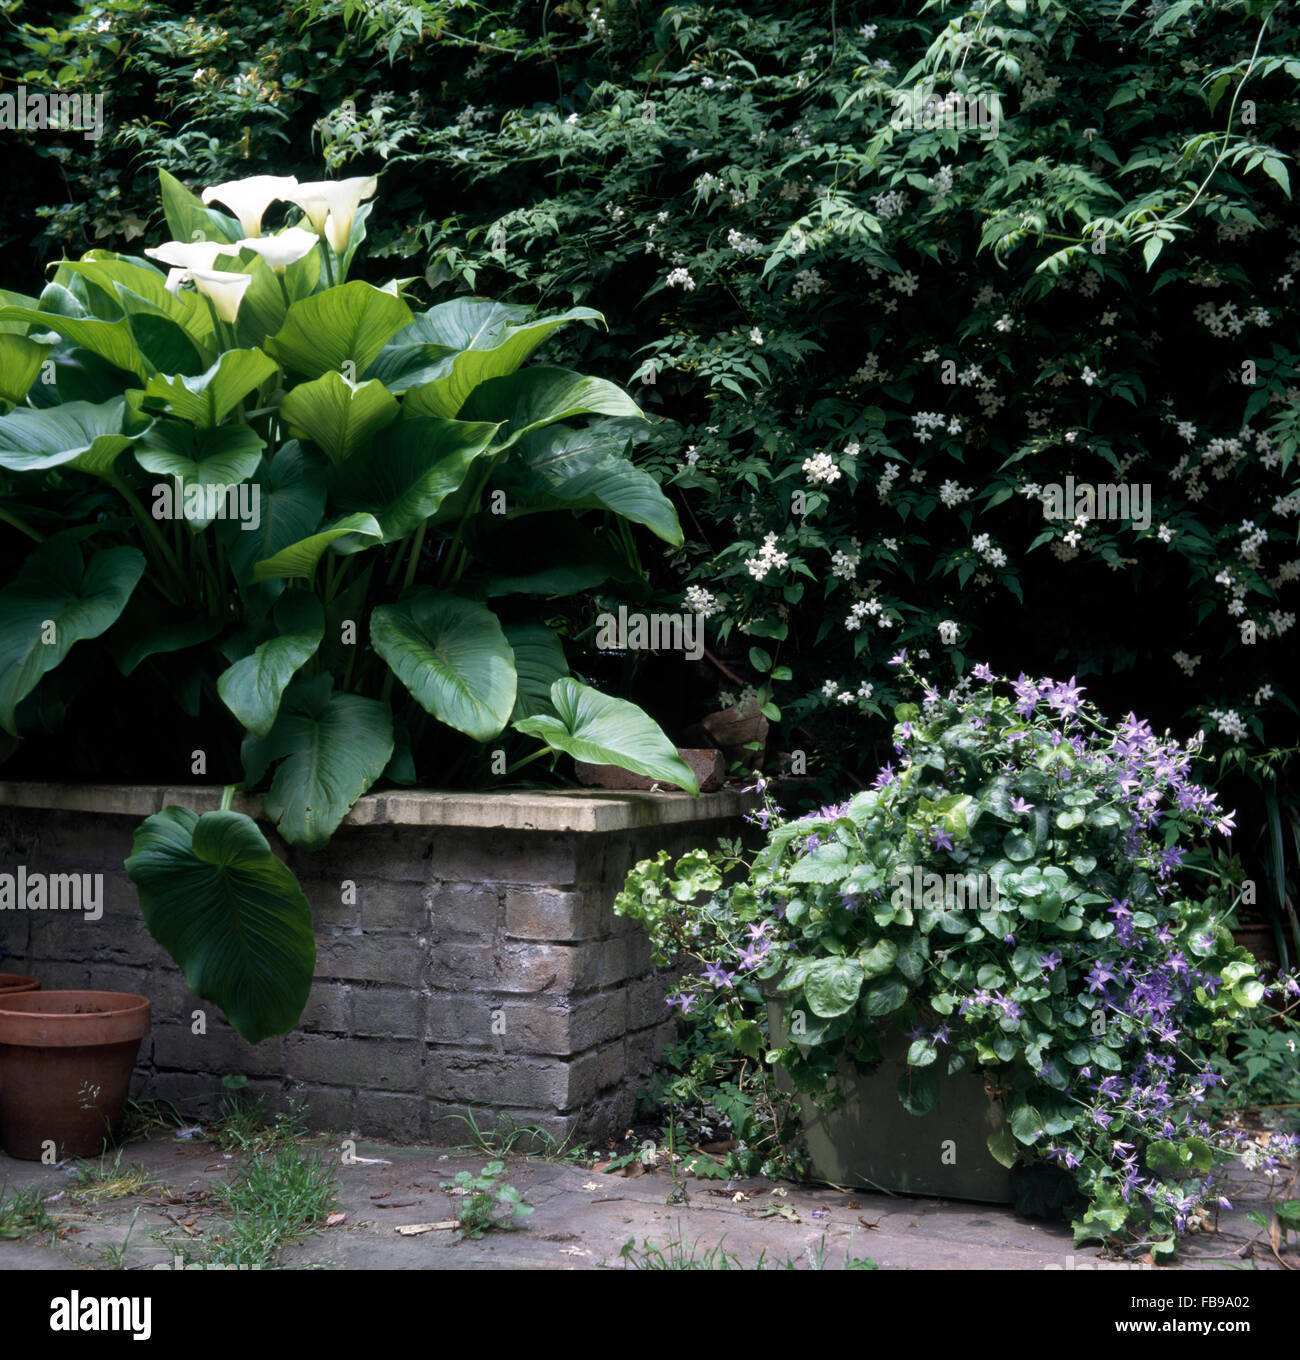 Zantedeschia blanc dans une brique à côté du semoir un pot de bleu campanula dans une maison avec jardin Jasmin blanc Banque D'Images